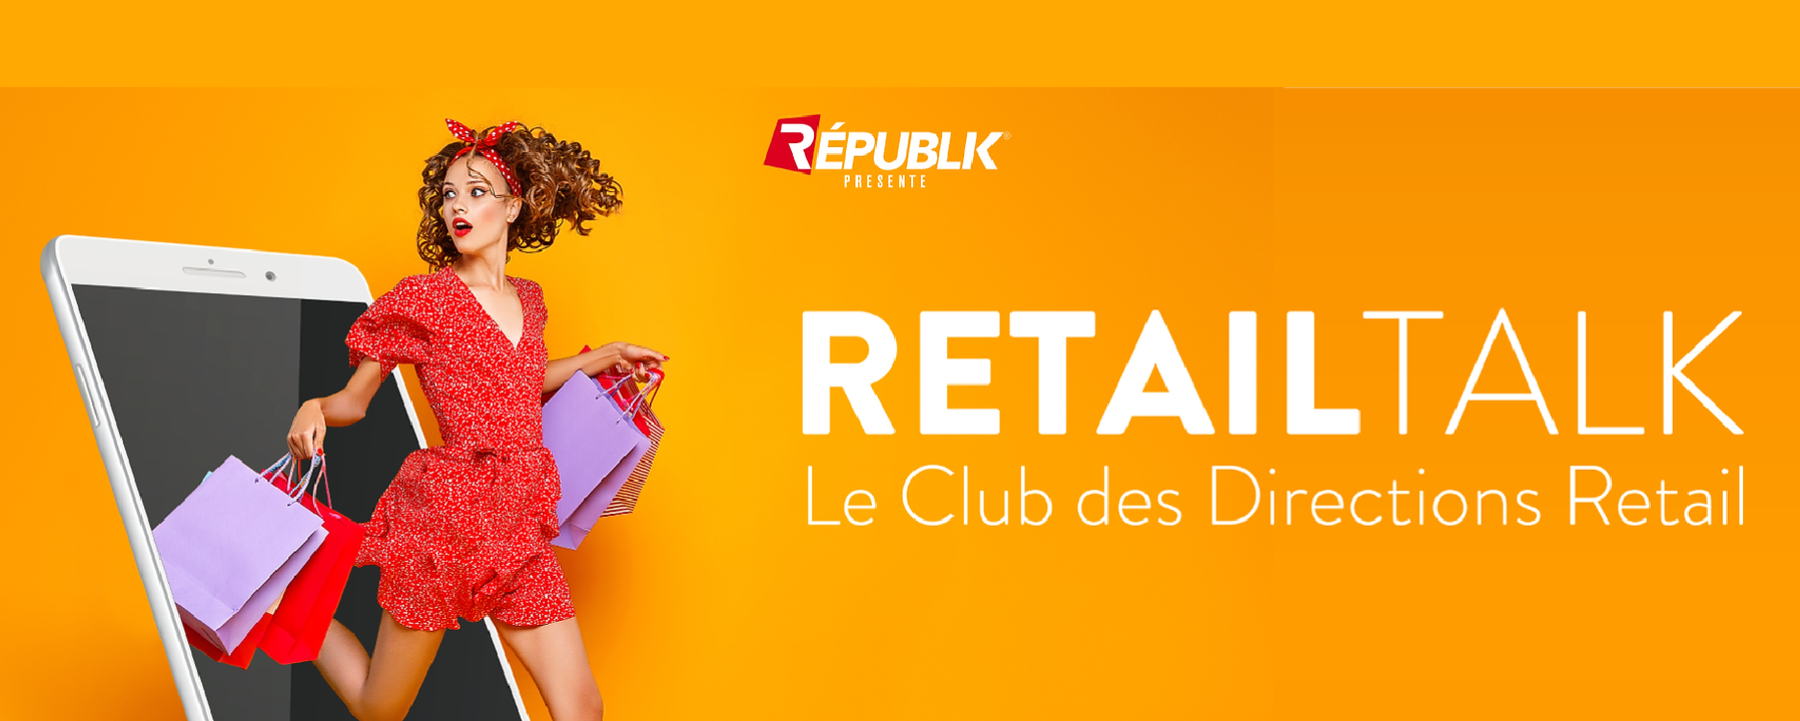 Club Retail Talk